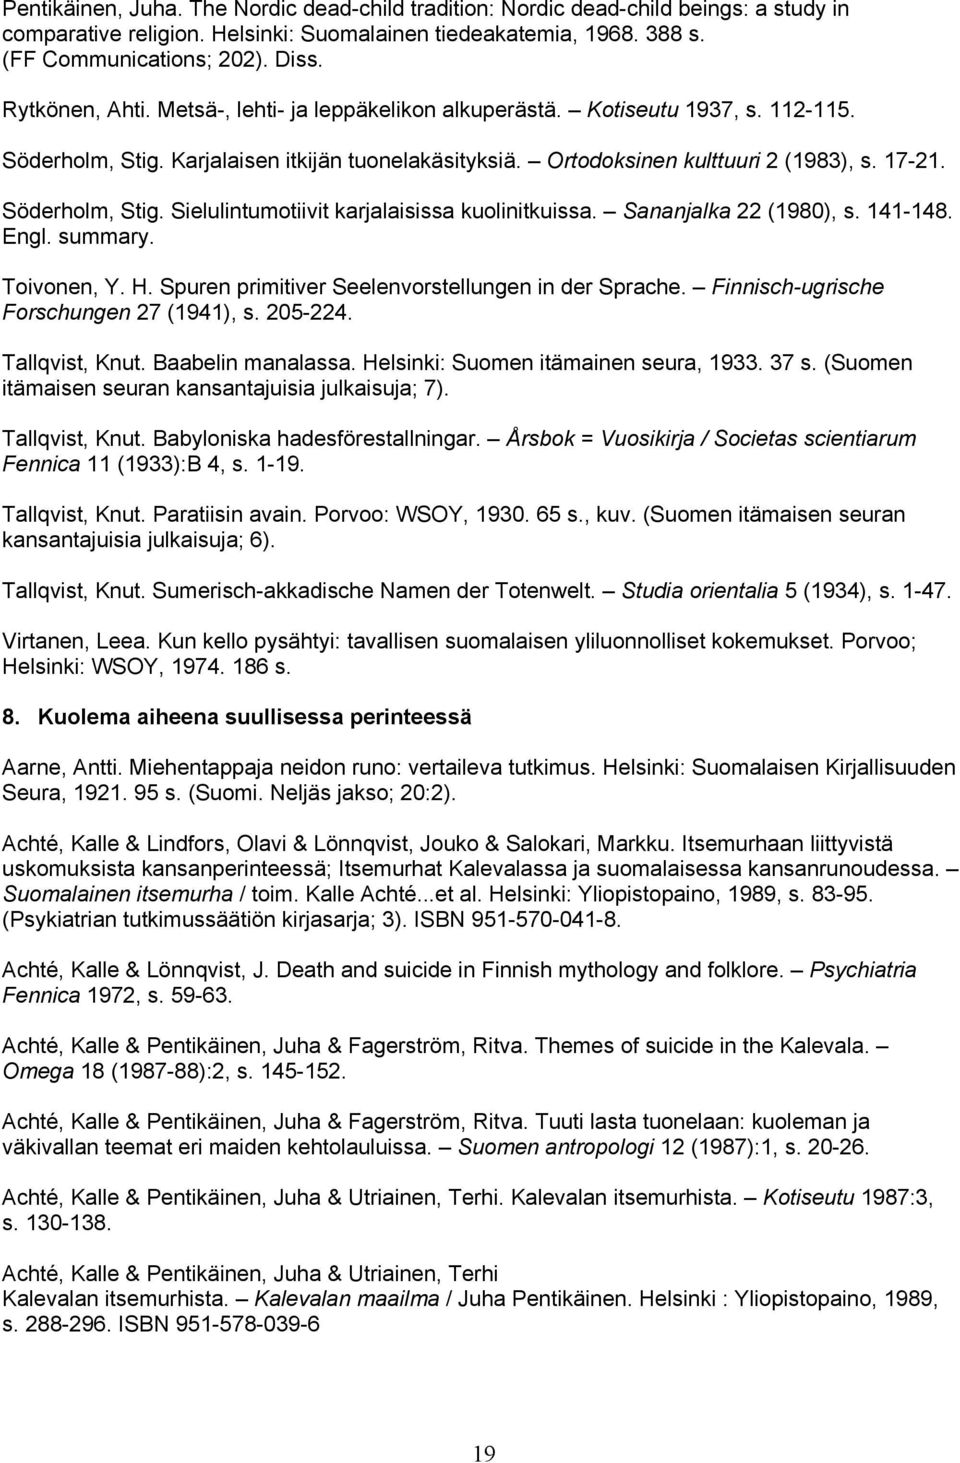 Söderholm, Stig. Sielulintumotiivit karjalaisissa kuolinitkuissa. Sananjalka 22 (1980), s. 141-148. Engl. summary. Toivonen, Y. H. Spuren primitiver Seelenvorstellungen in der Sprache.